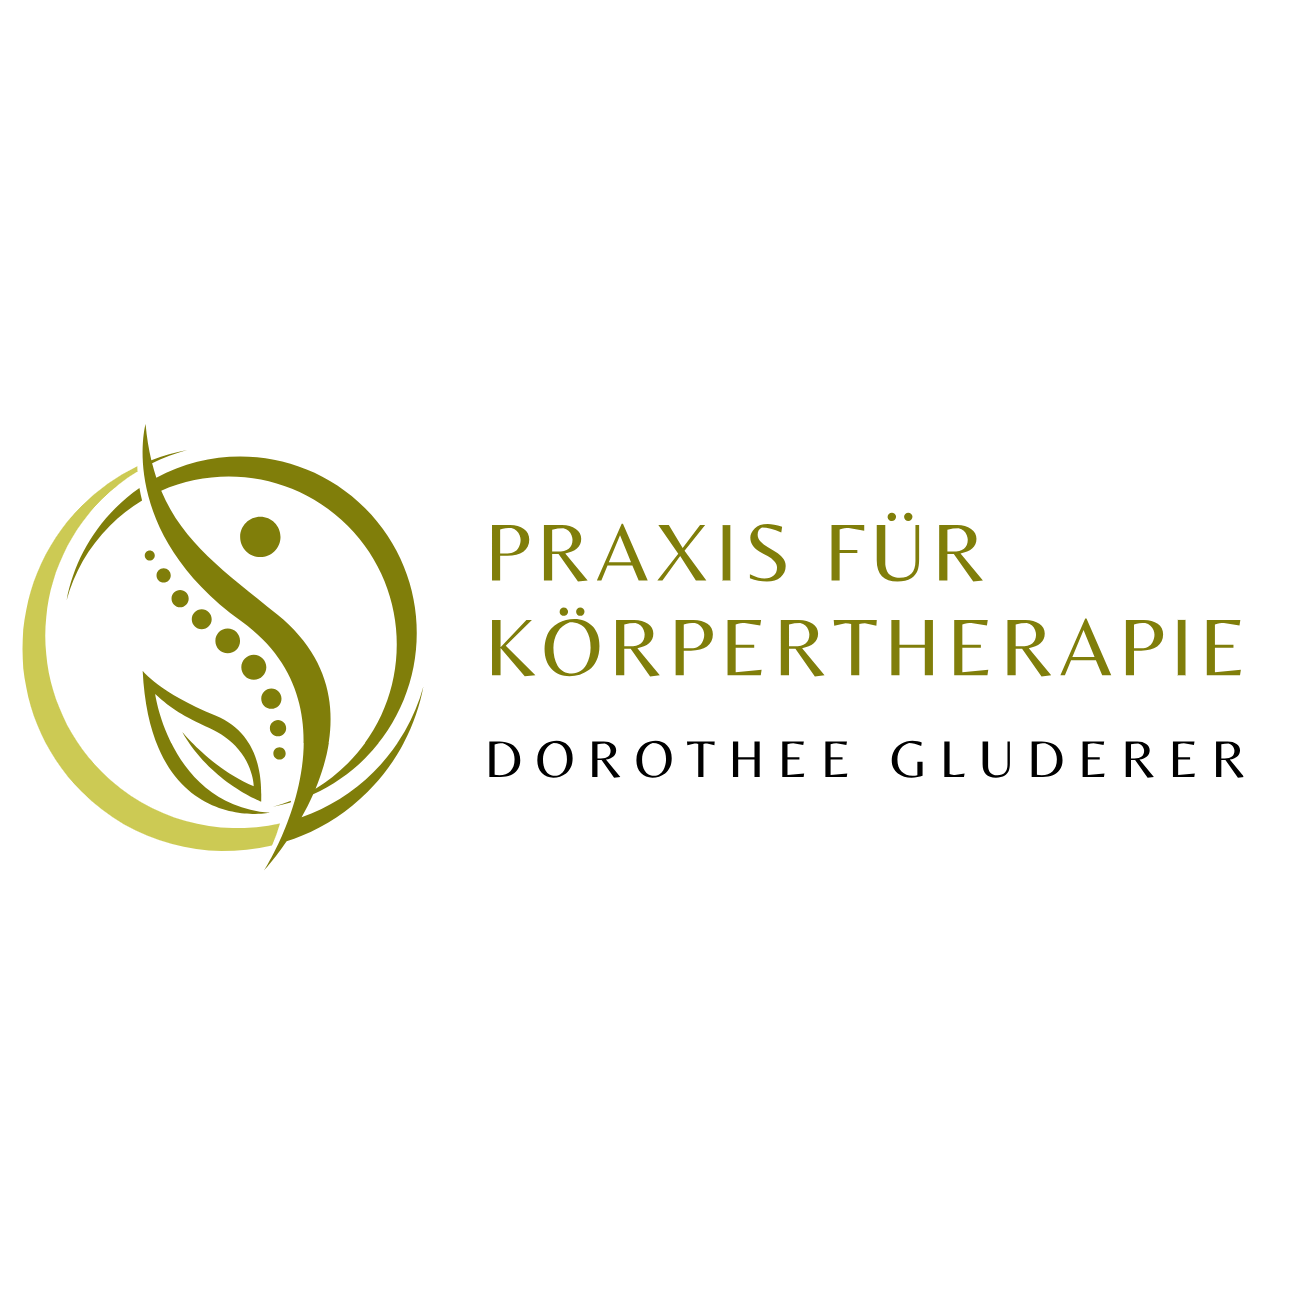 Praxis für Körpertherapie/POHLTHERAPIE, Dorothee Gluderer in Reinbek - Logo